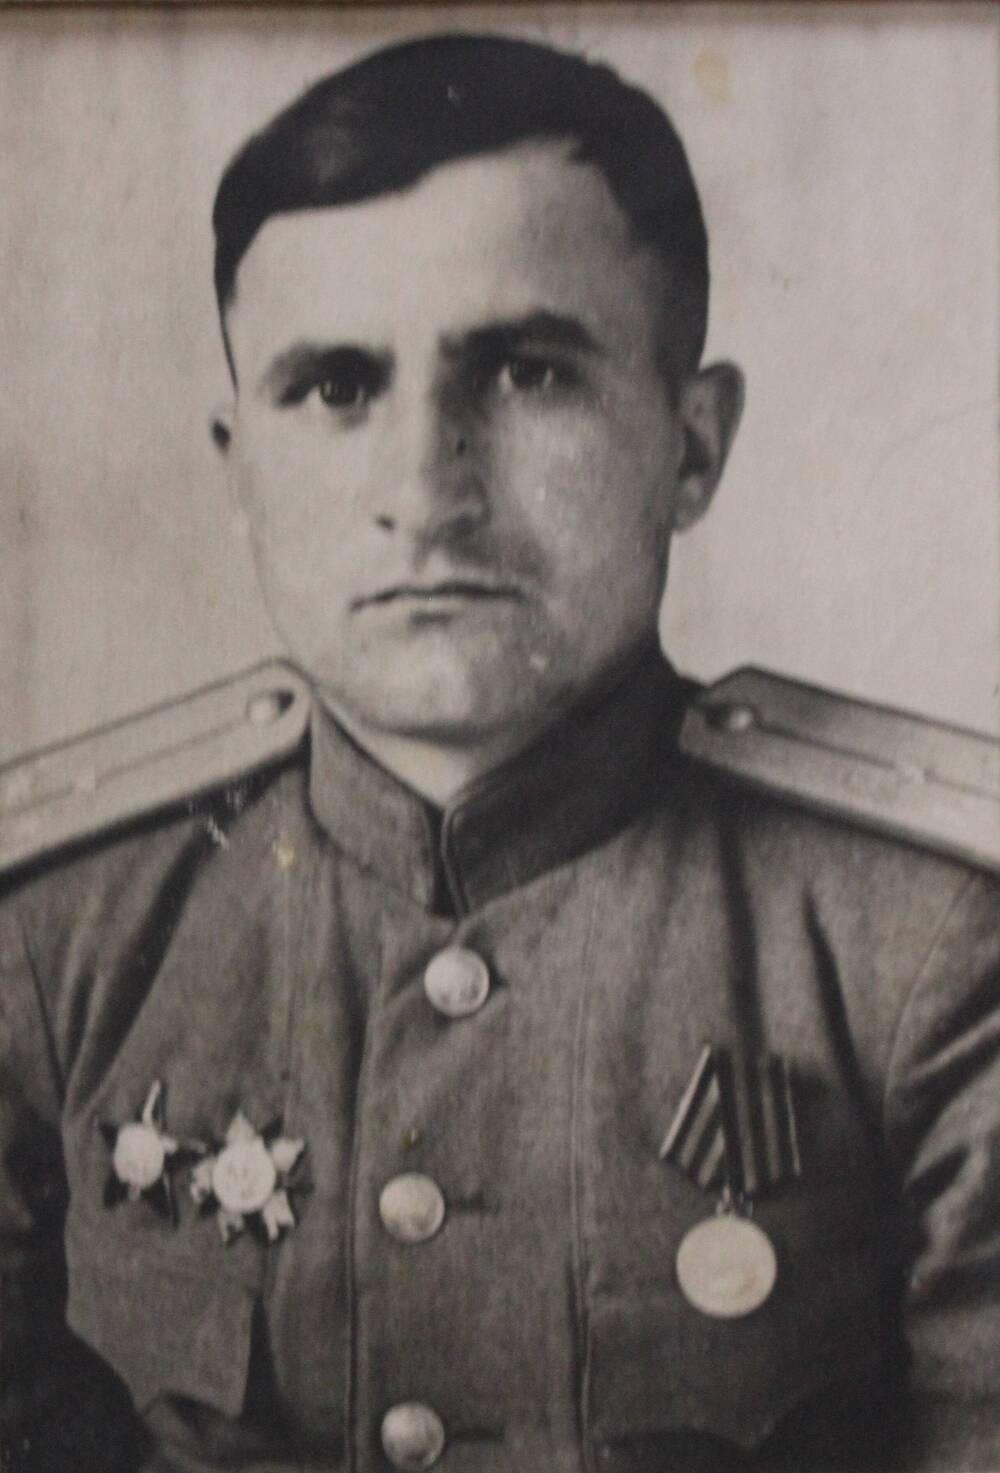 Фотография участника Великой Отечественной войны Турунтаева Петра Николаевича